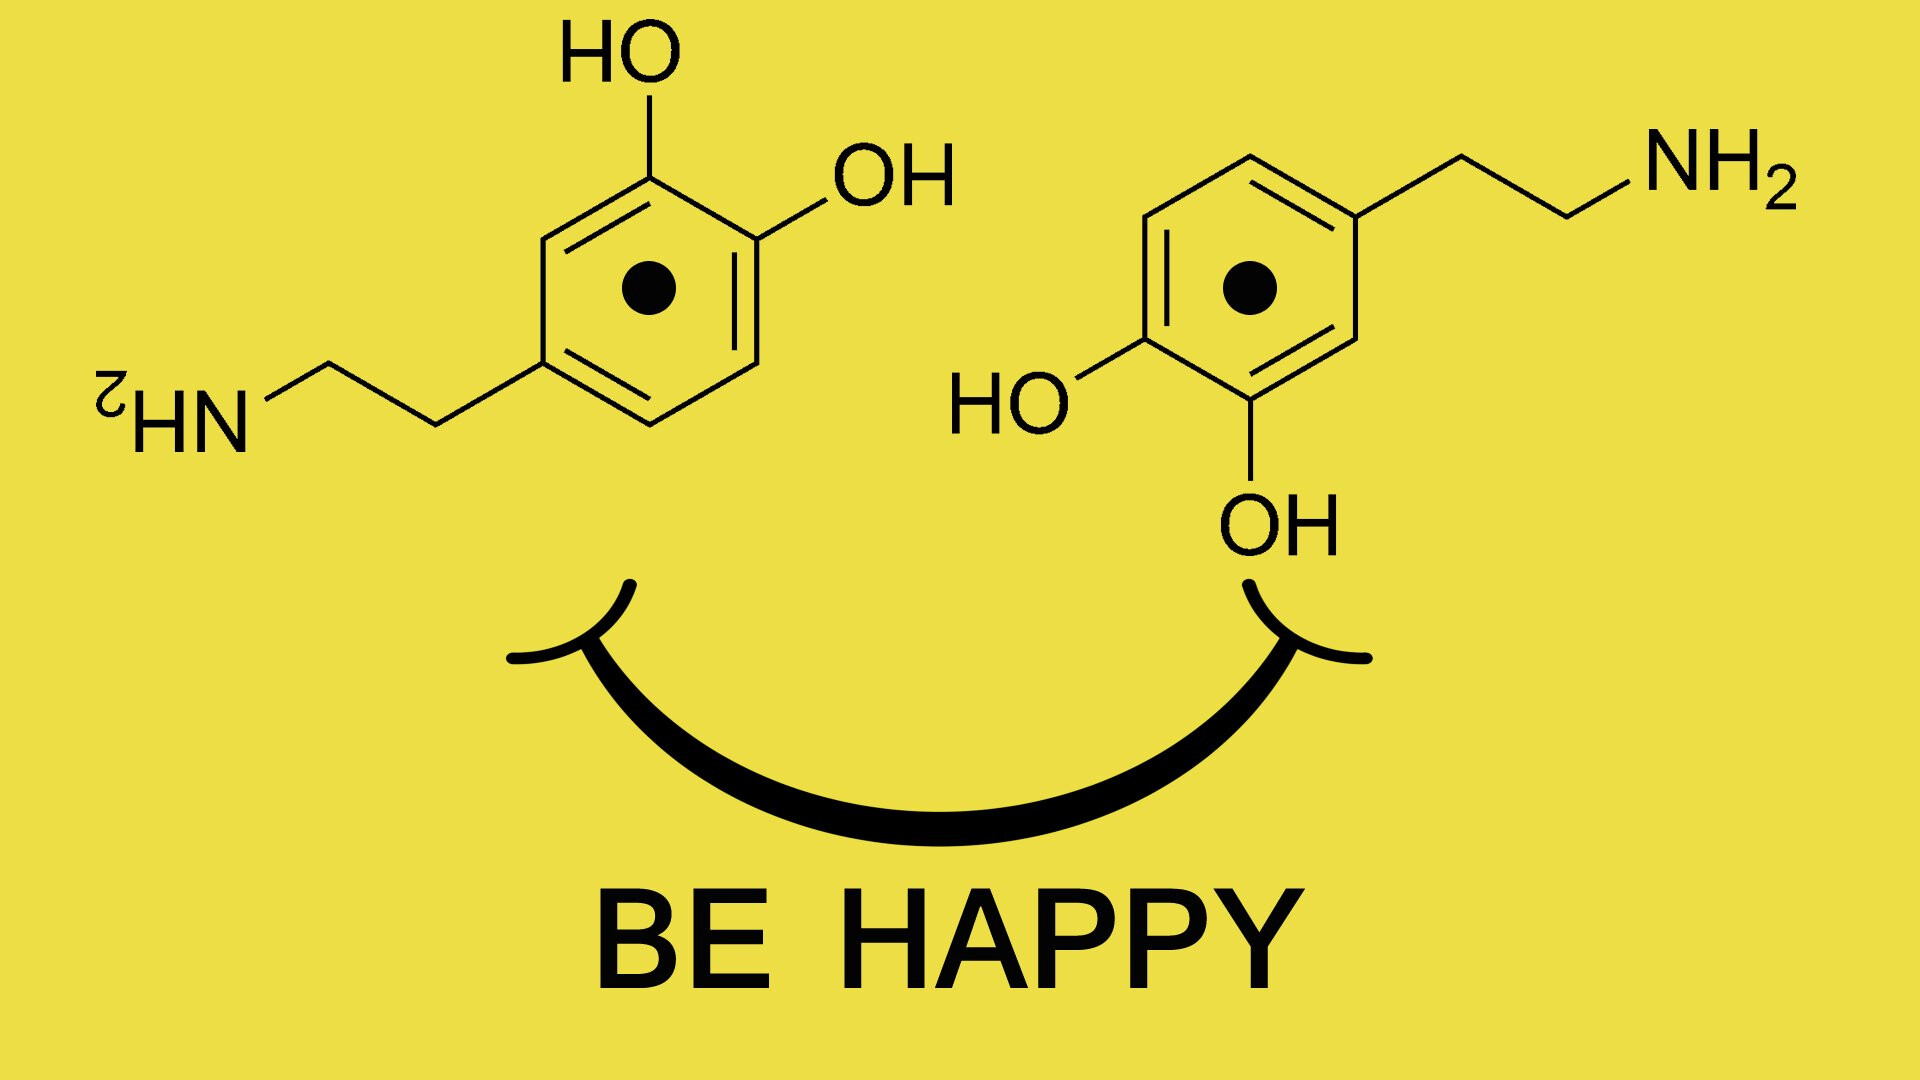 Эндорфин 3. Гормон счастья дофамин формула. Дофамин гормон формула. Формула дофамина химия. Гормон счастья формула химическая.